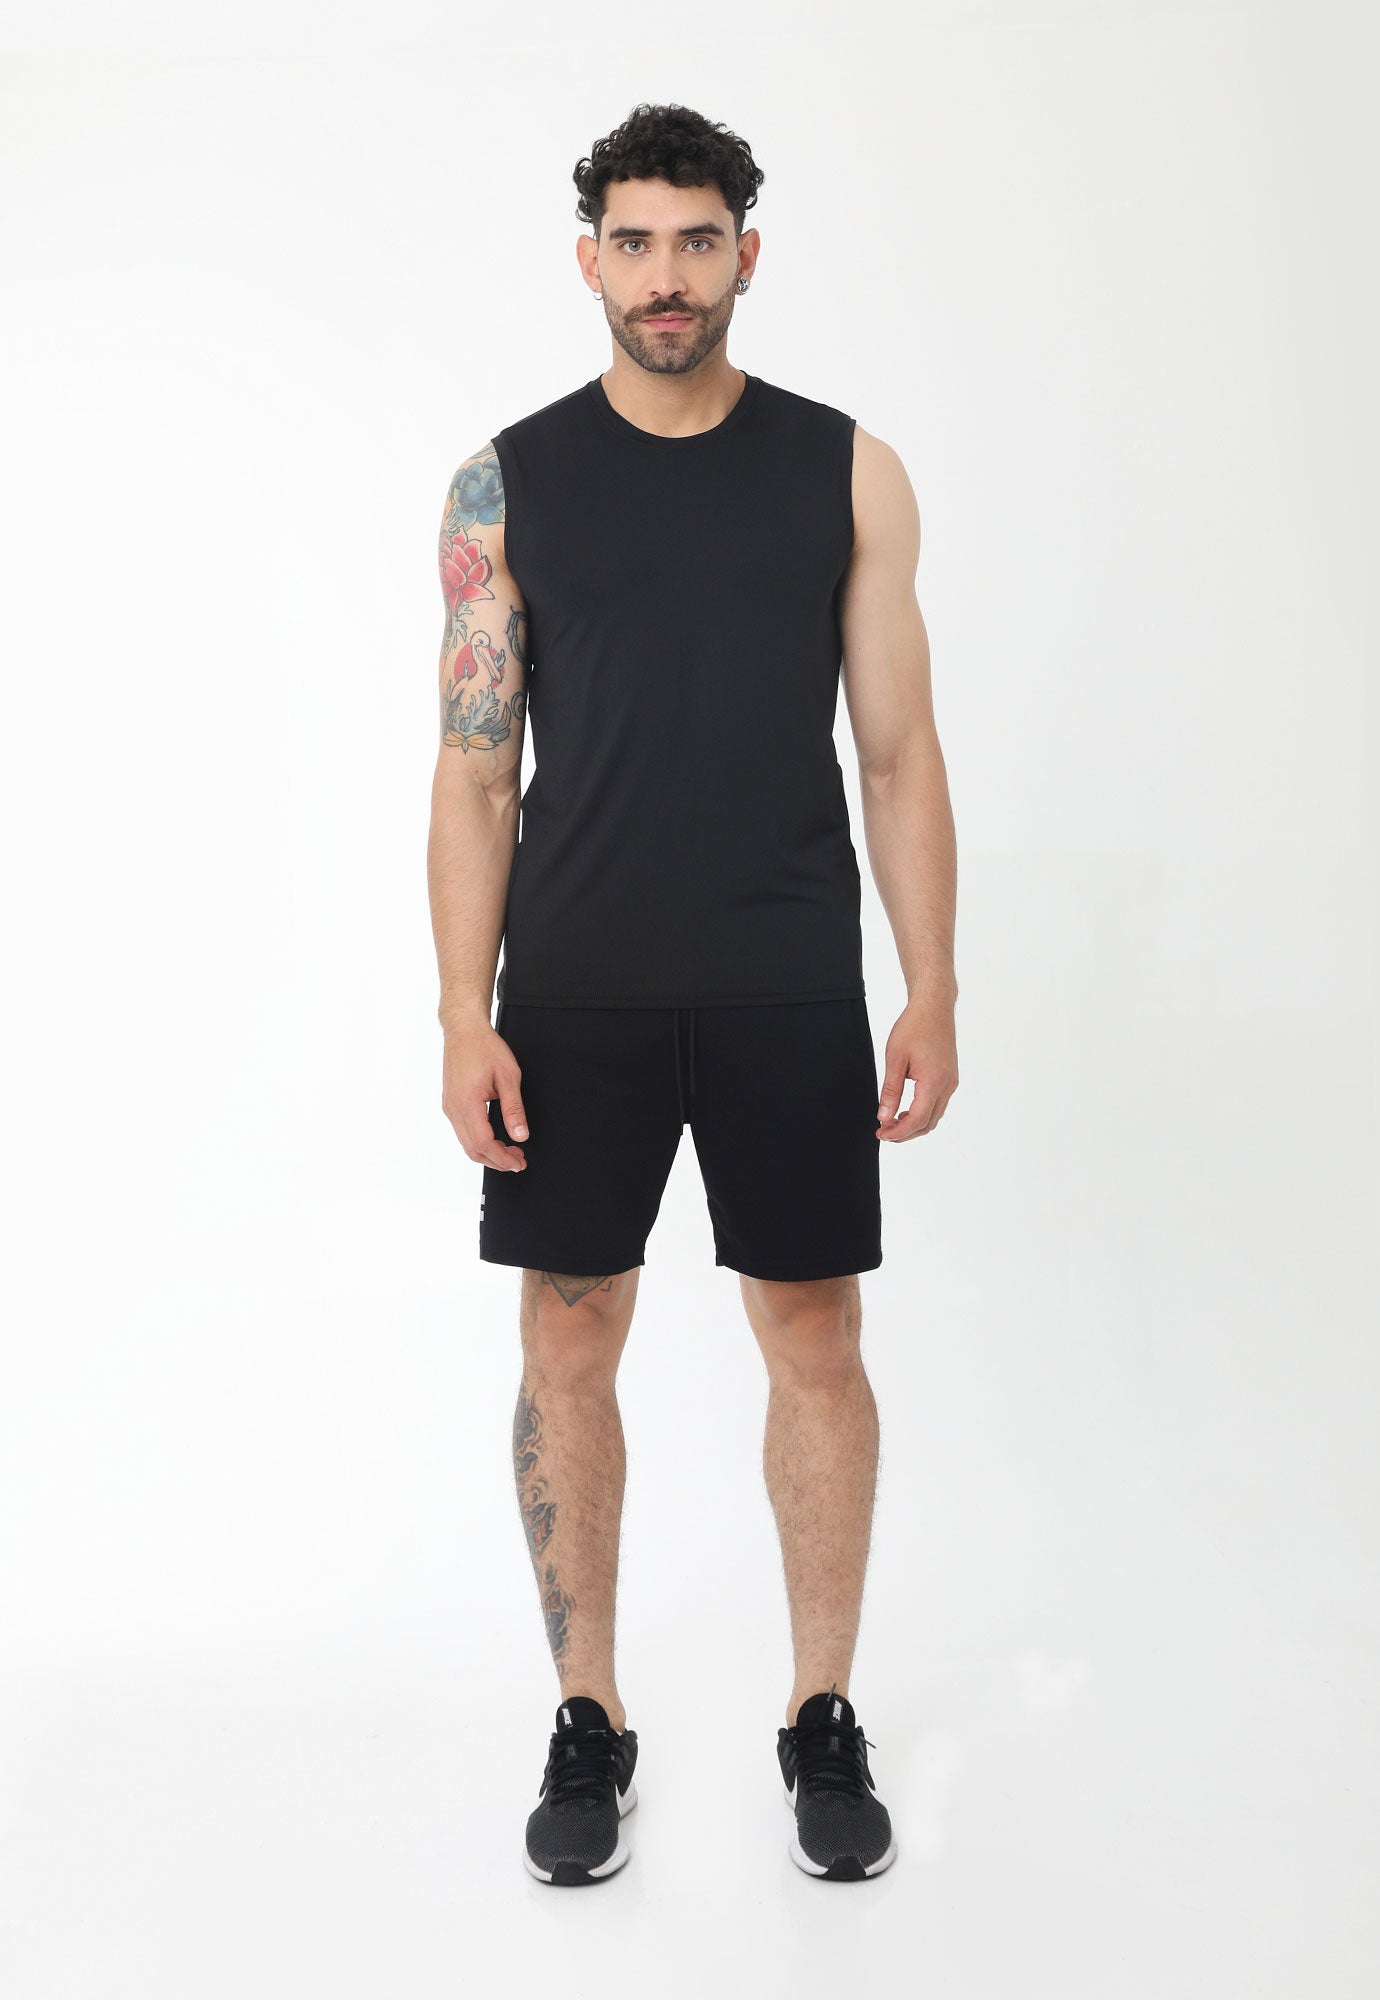 Camisilla deportiva negro manga sisa, bloque en espalda vertical, transfer reflectivo en frente y en bloque para hombre